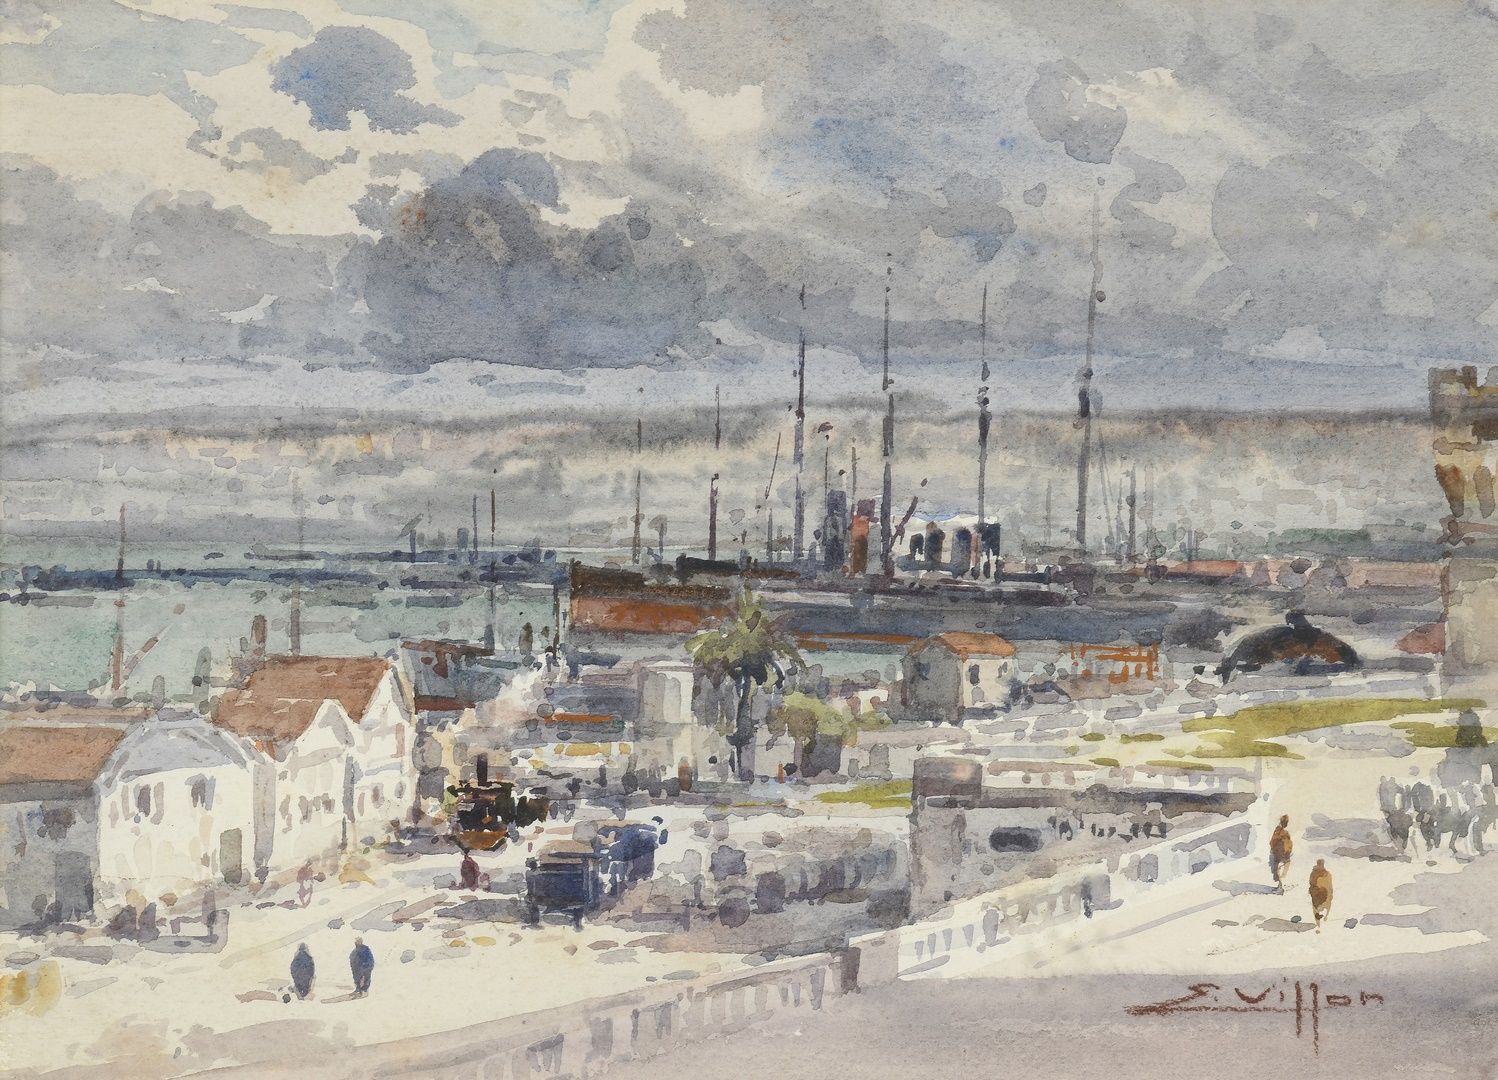 Null VILLON Eugène, 1879-1951
阿尔及尔港
水彩画（有霉斑），右下方有签名，位于卡纸上
23.5 x 33 厘米，正在展出。